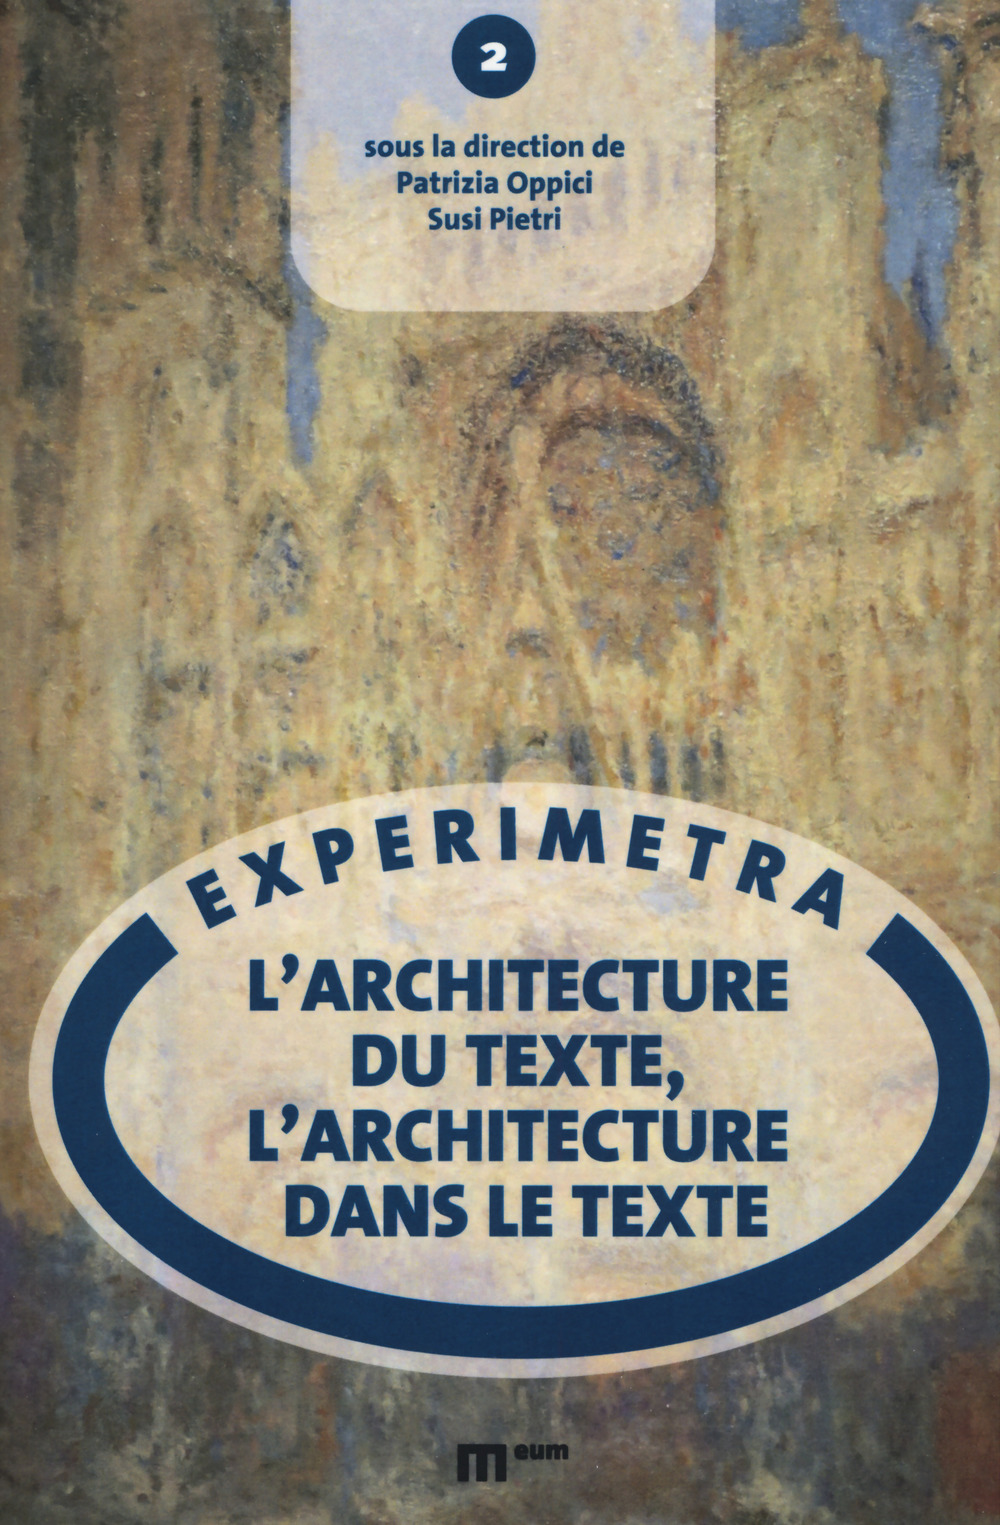 L'architecture du texte, l'architecture dans le texte